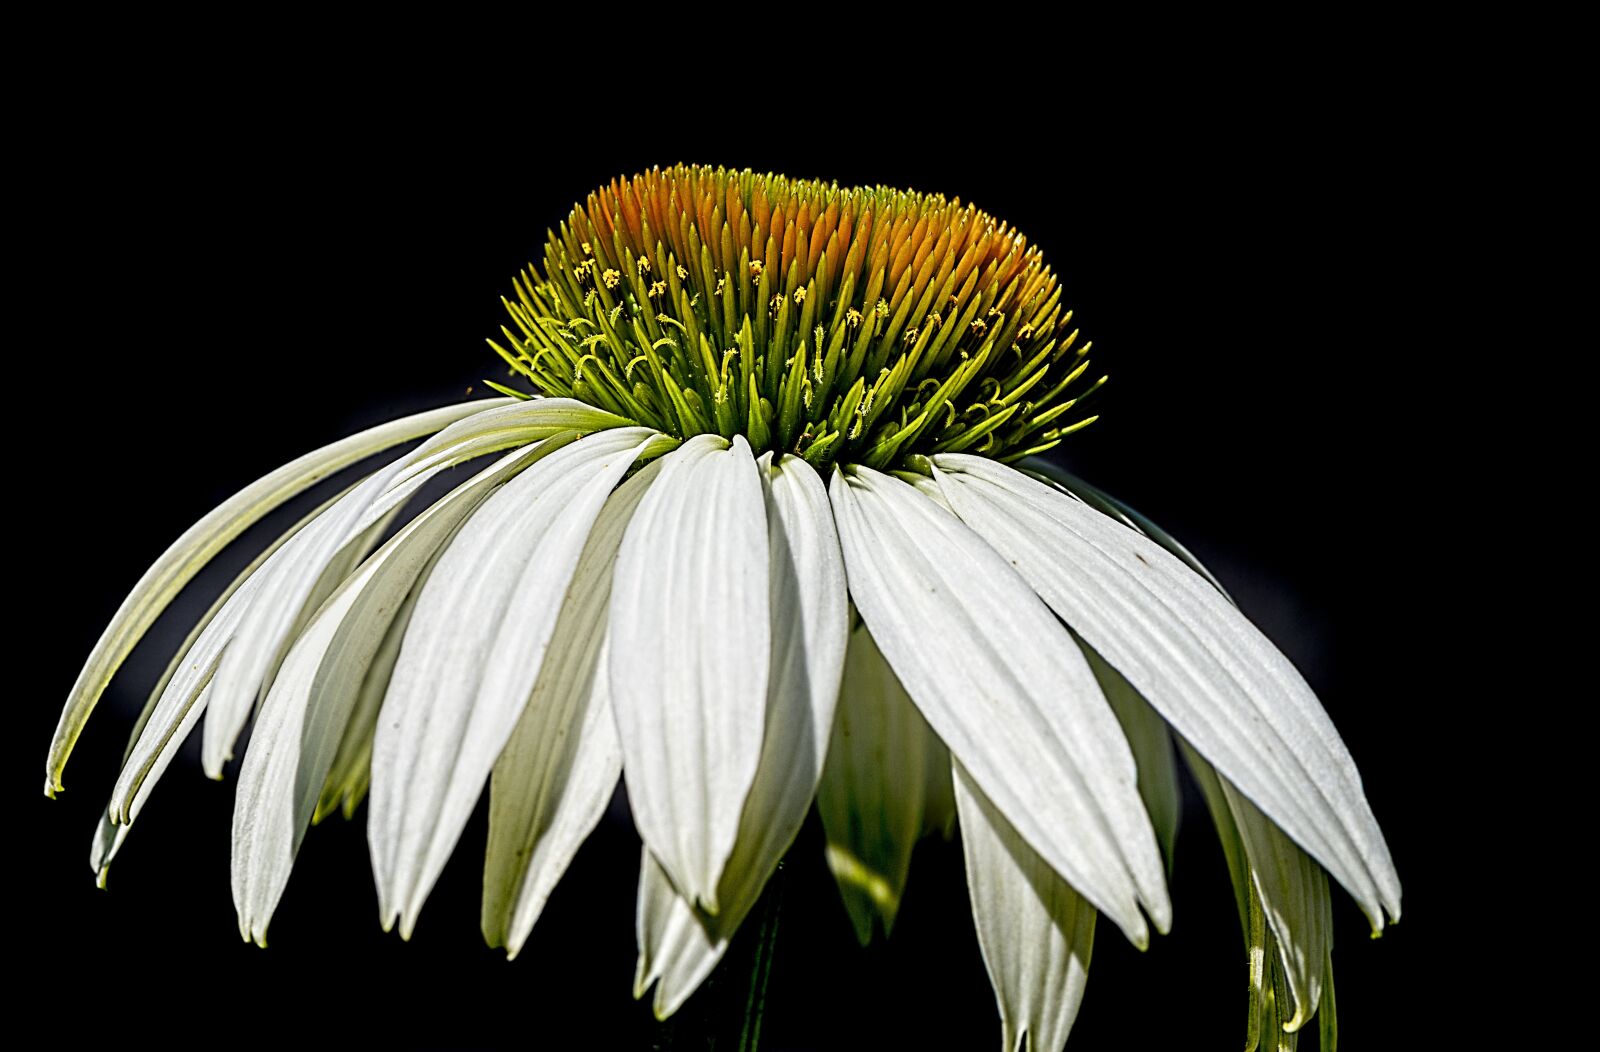 Nikon D610 sample photo. Daisy, flower, plant photography